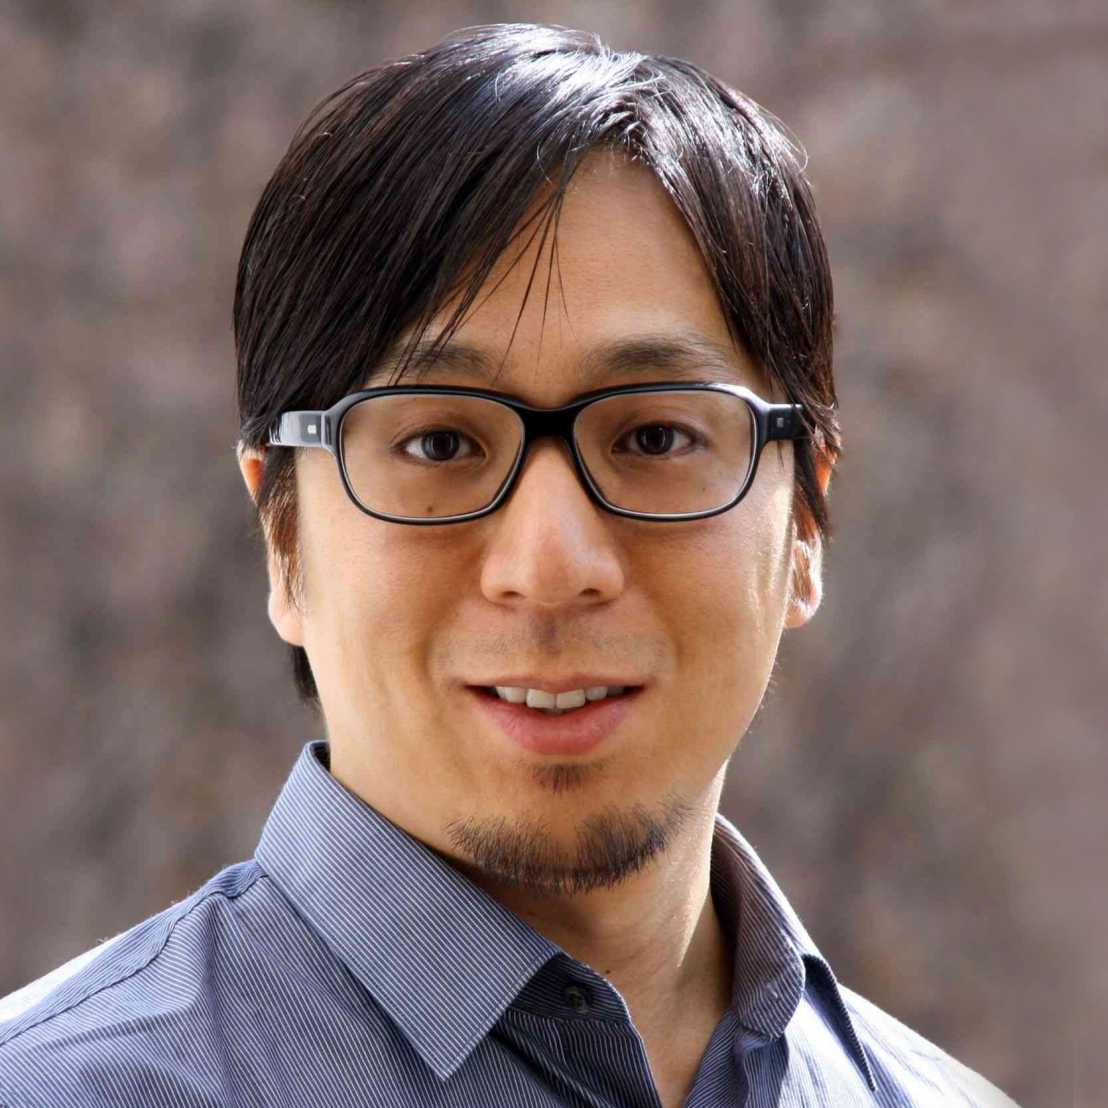 Prof. Shinichi Sunagawa